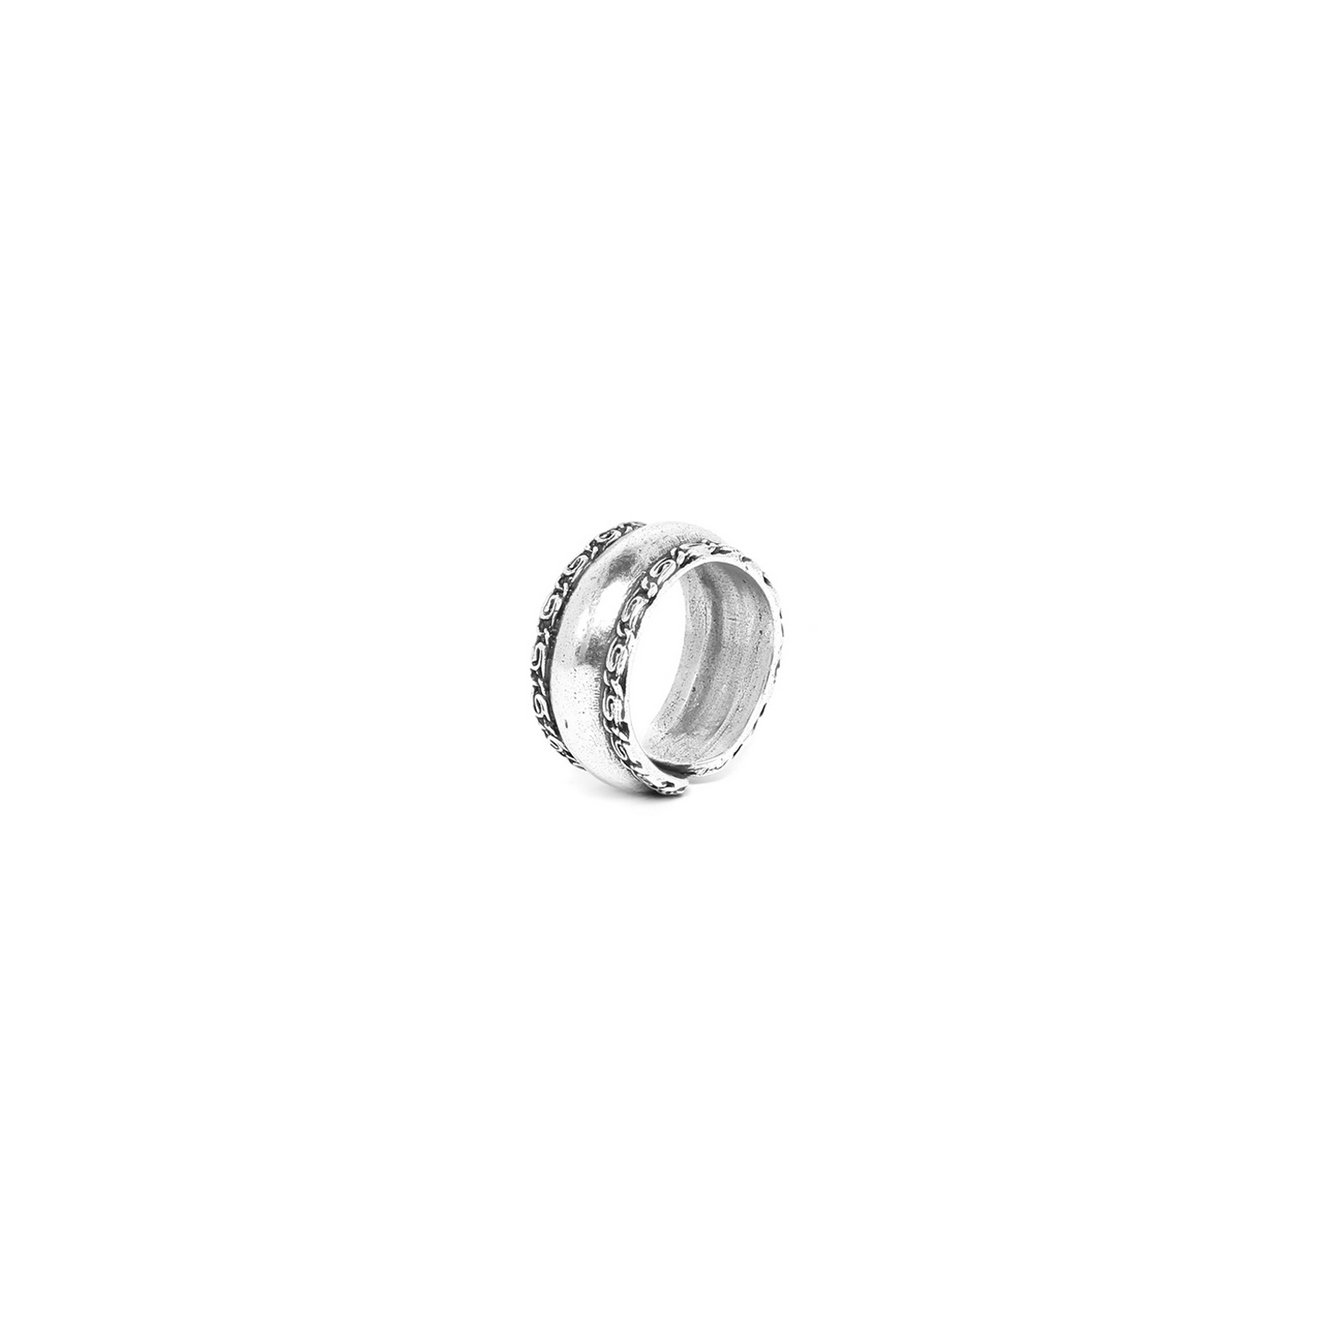 Кольцо ORI TAO, Origine, разъемное, с рельефной текстурой, OT22.2-19-29968 (серебристый)